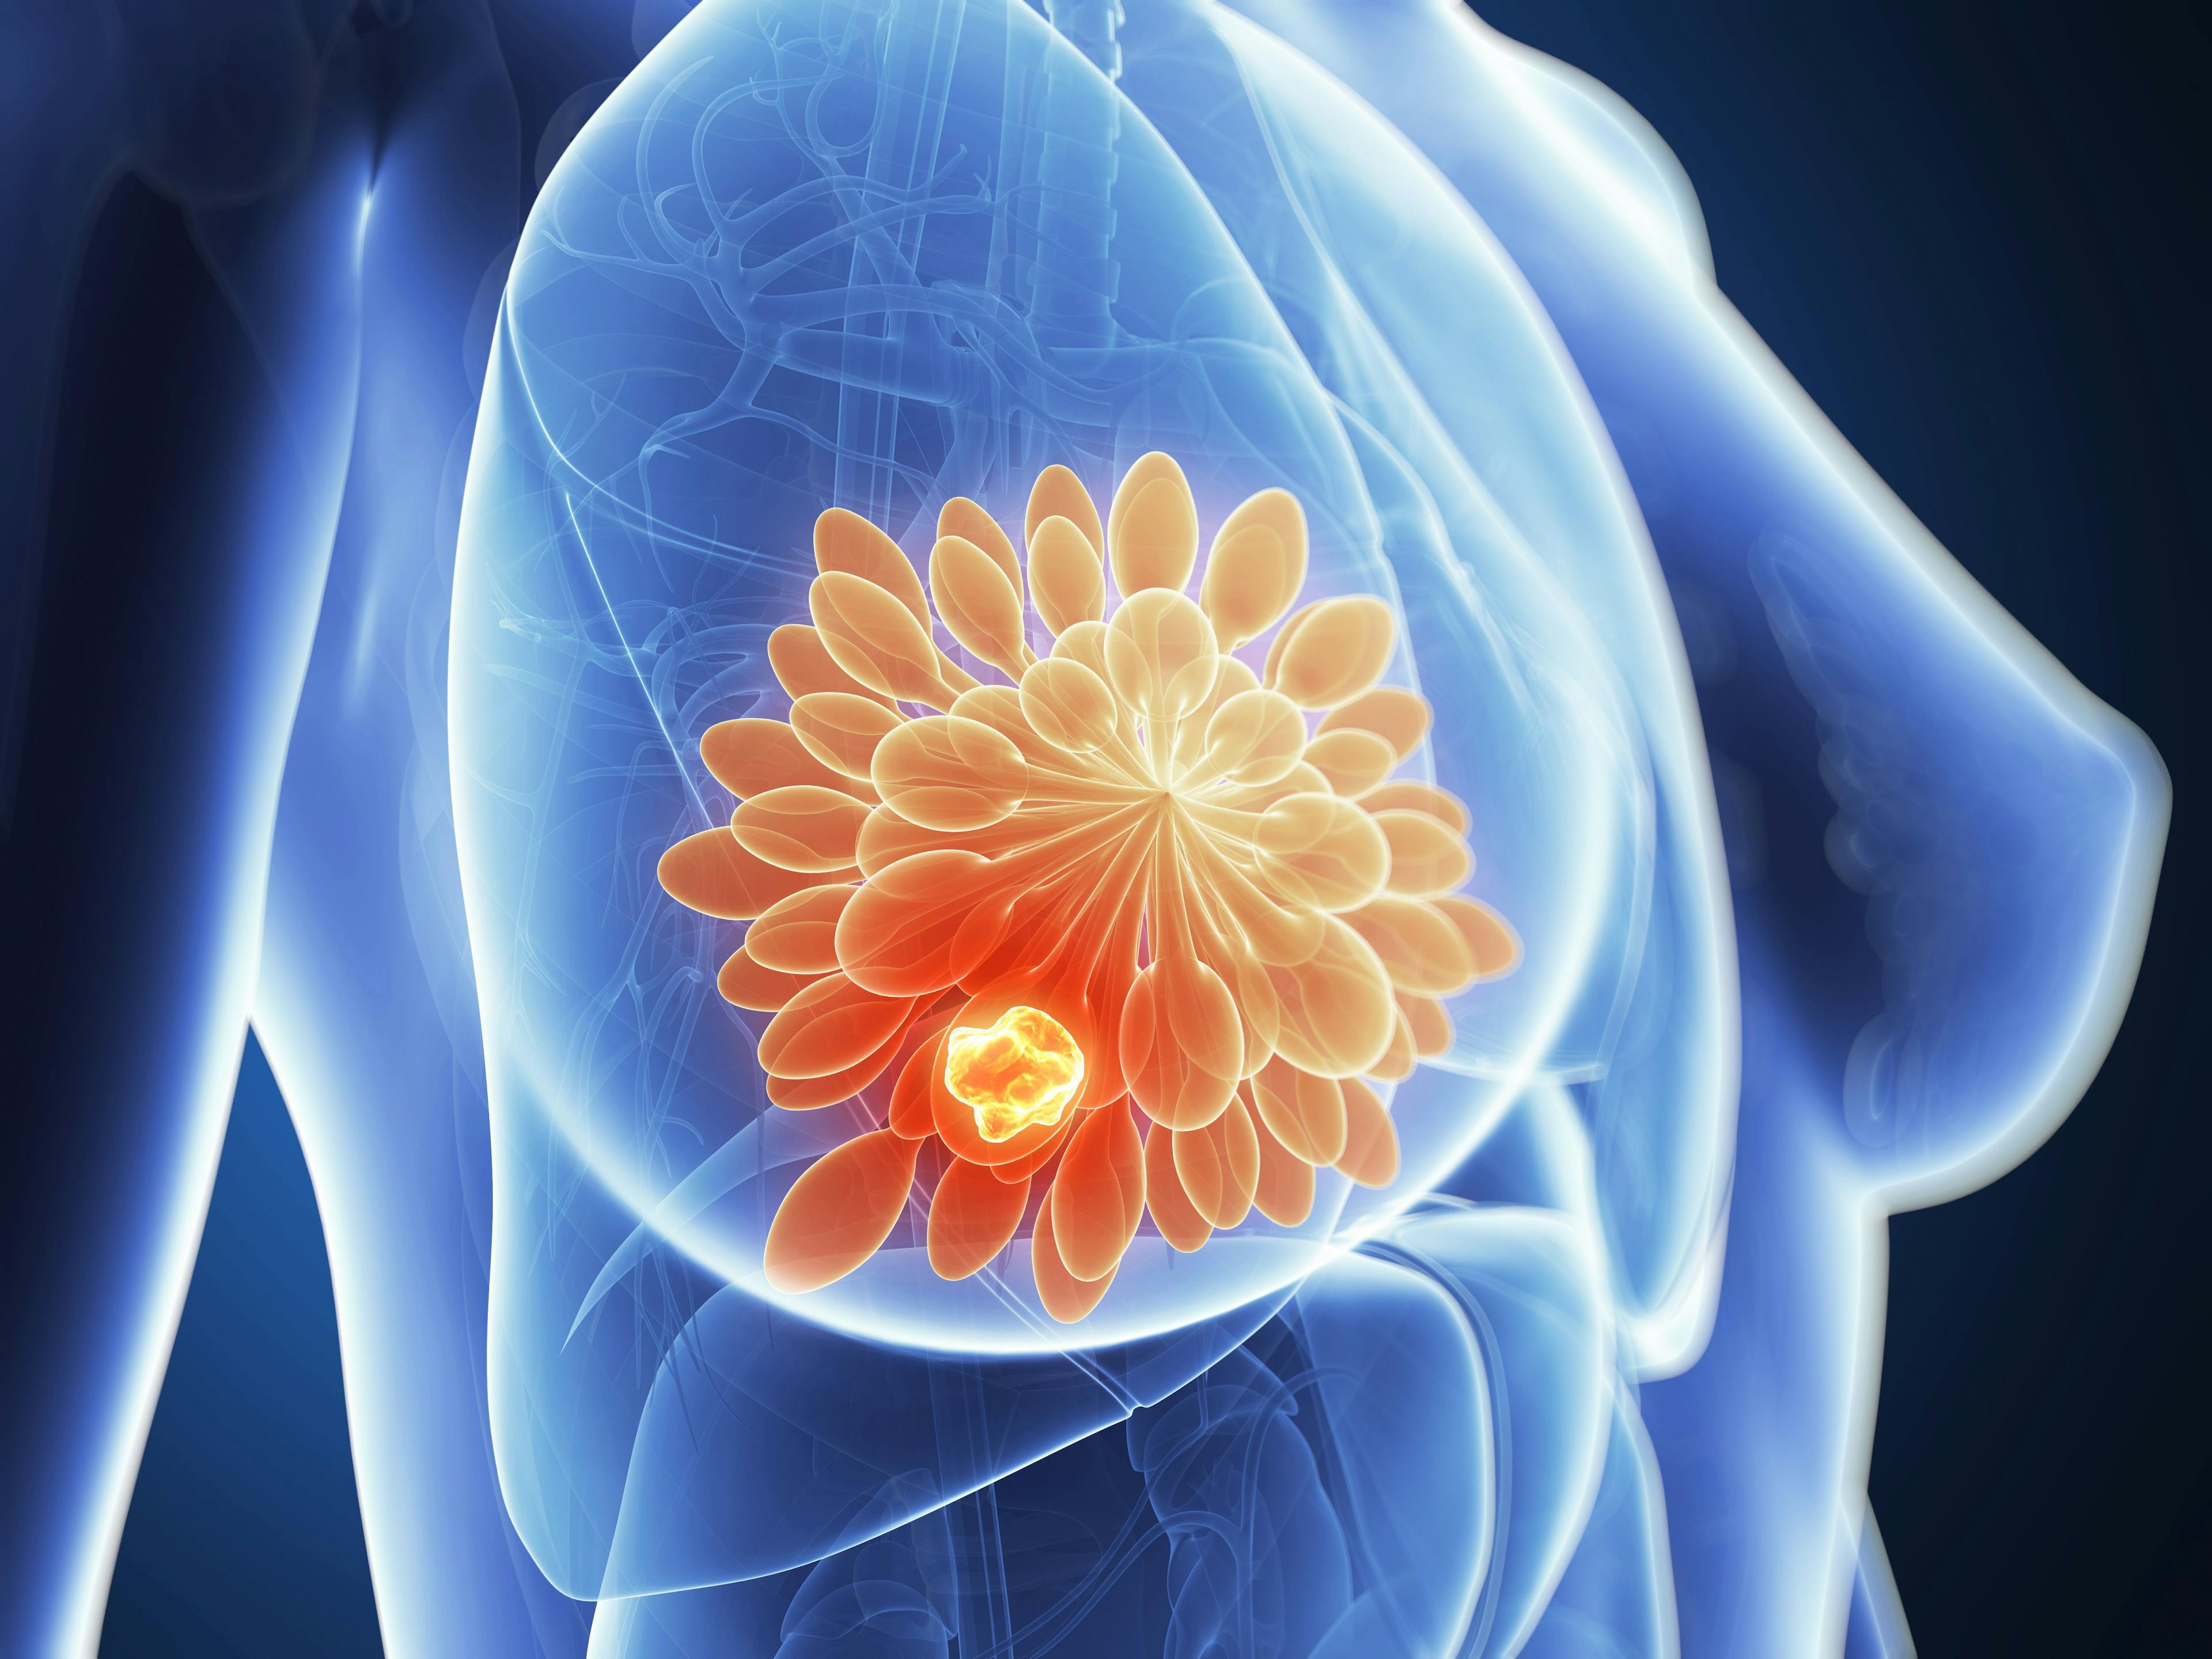 3d rendered illustration - breast cancer | Image credit: SciePro - stock.adobe.com